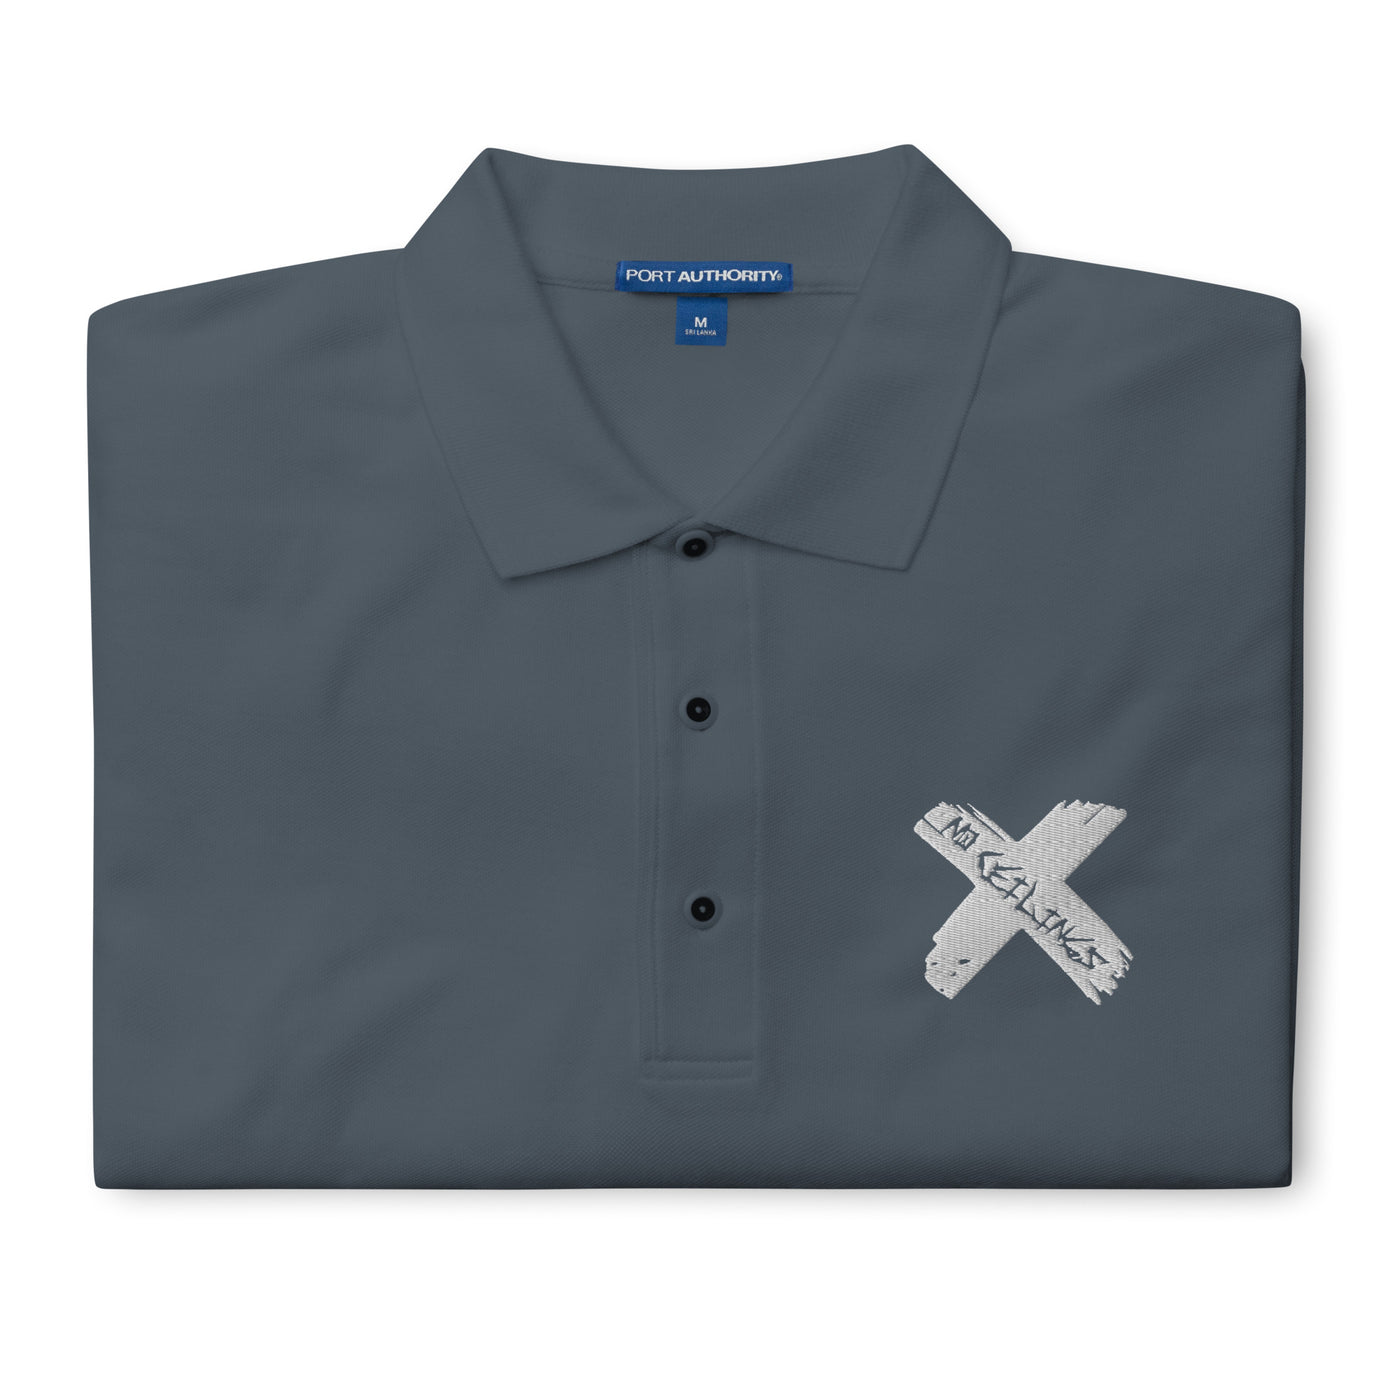 X Style “white X Men's Premium Polo